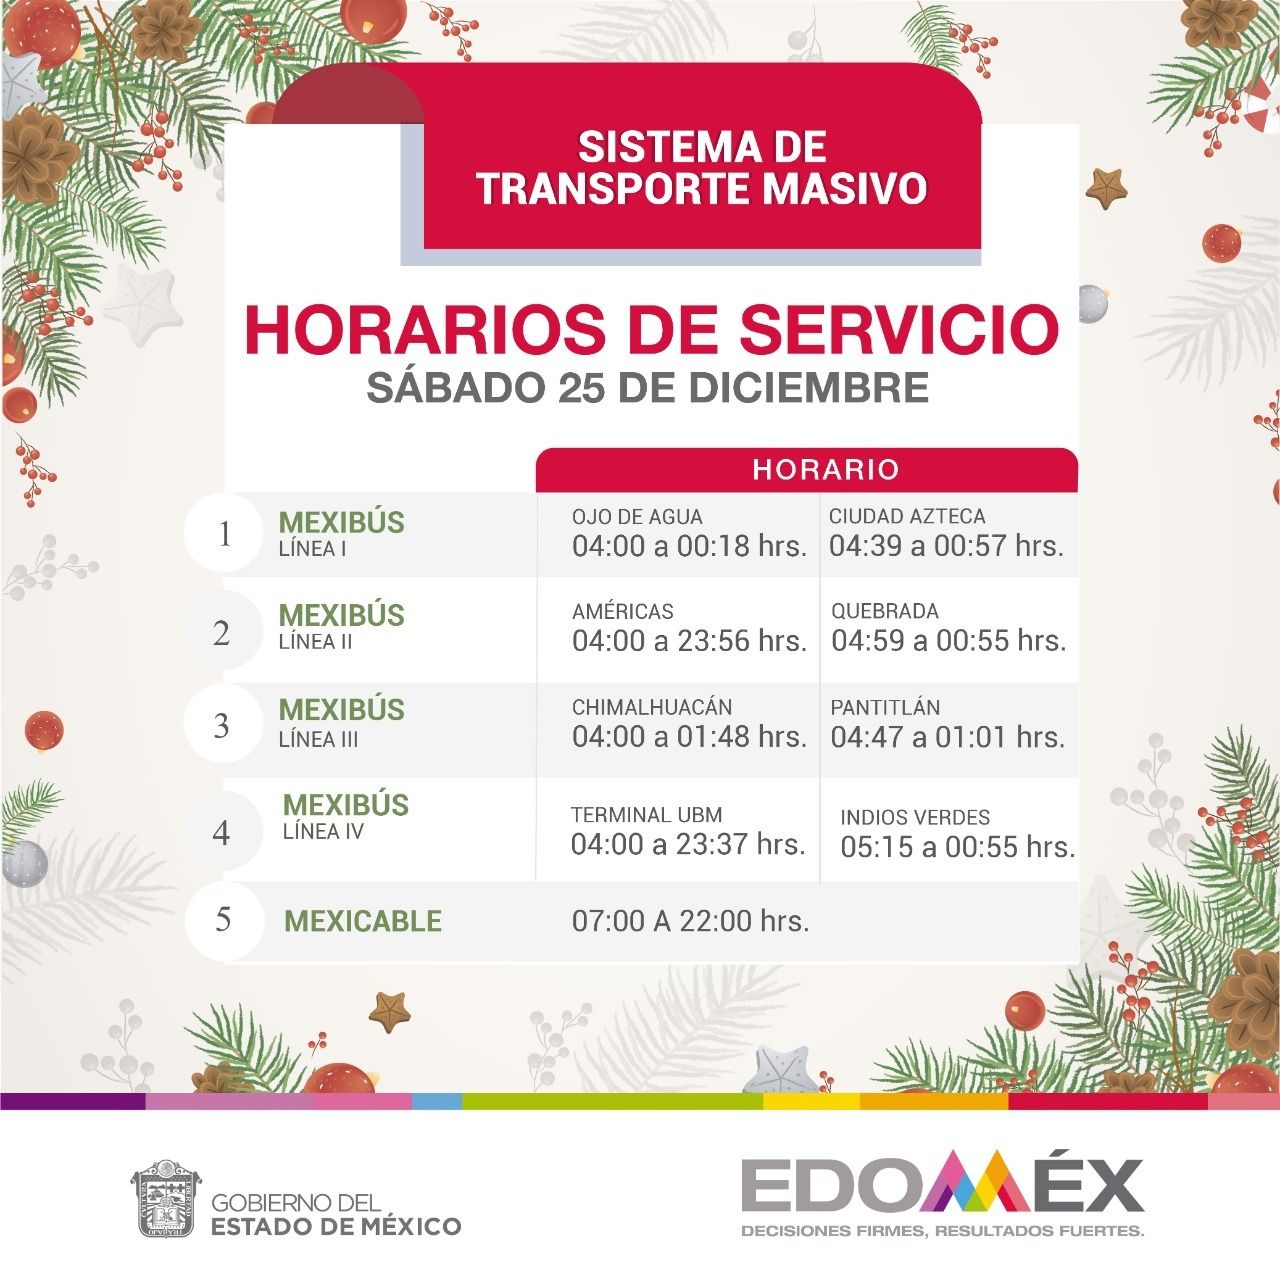 Informan que MEXIBÚS y MEXICABLE operarán con horario especial los días 24 y 25 de diciembre